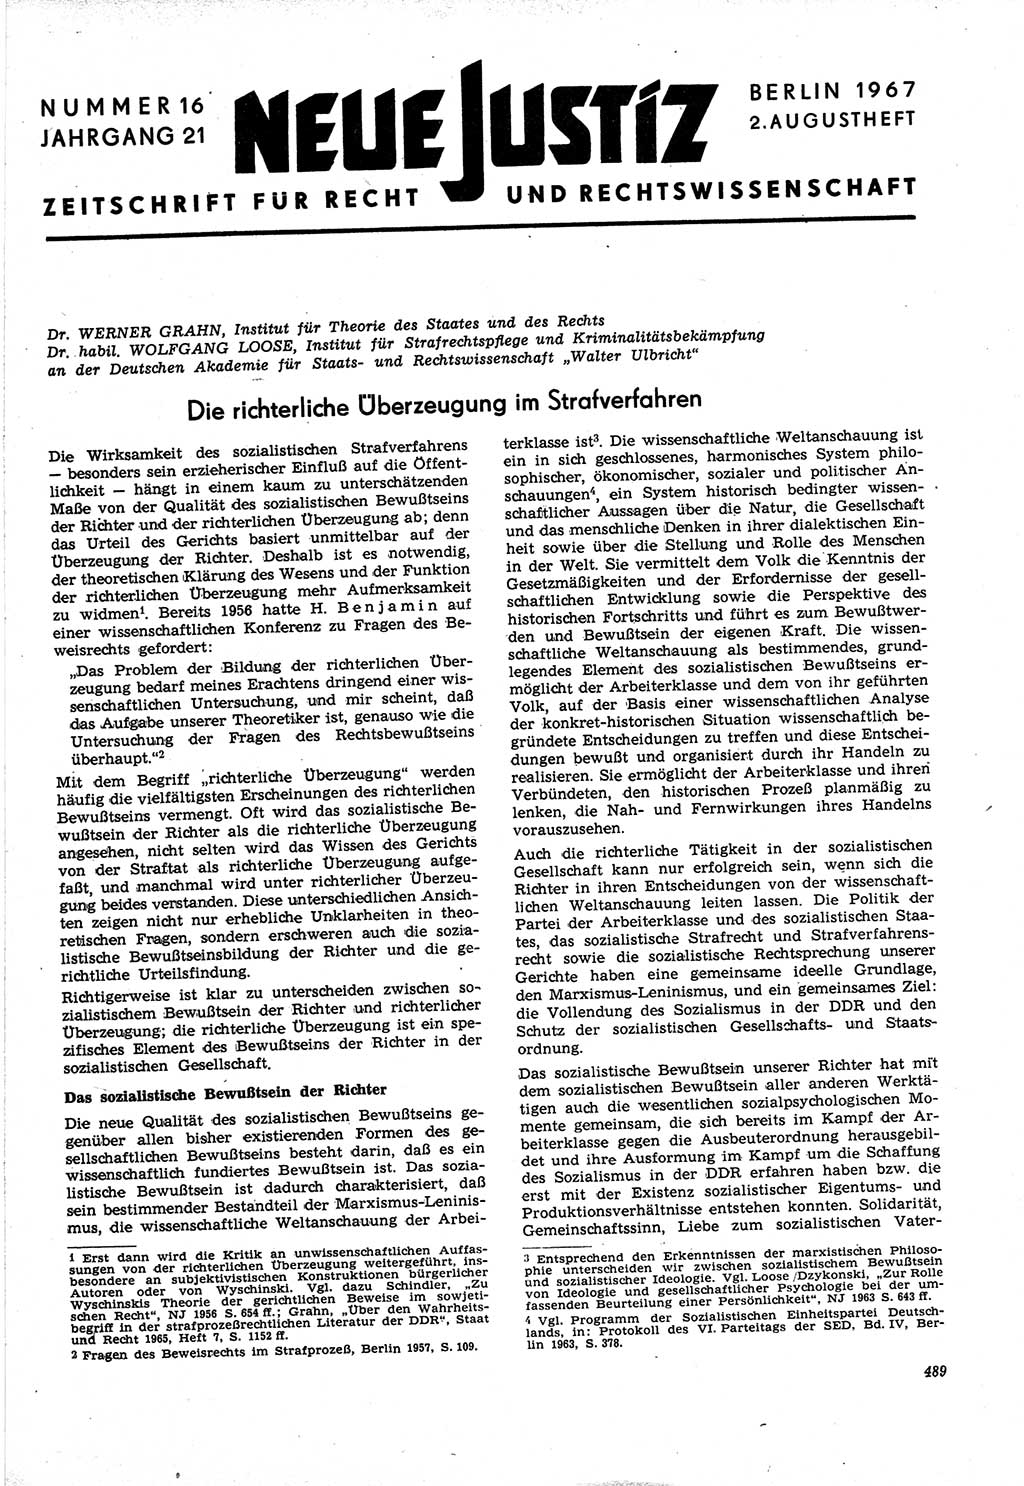 Neue Justiz (NJ), Zeitschrift für Recht und Rechtswissenschaft [Deutsche Demokratische Republik (DDR)], 21. Jahrgang 1967, Seite 489 (NJ DDR 1967, S. 489)